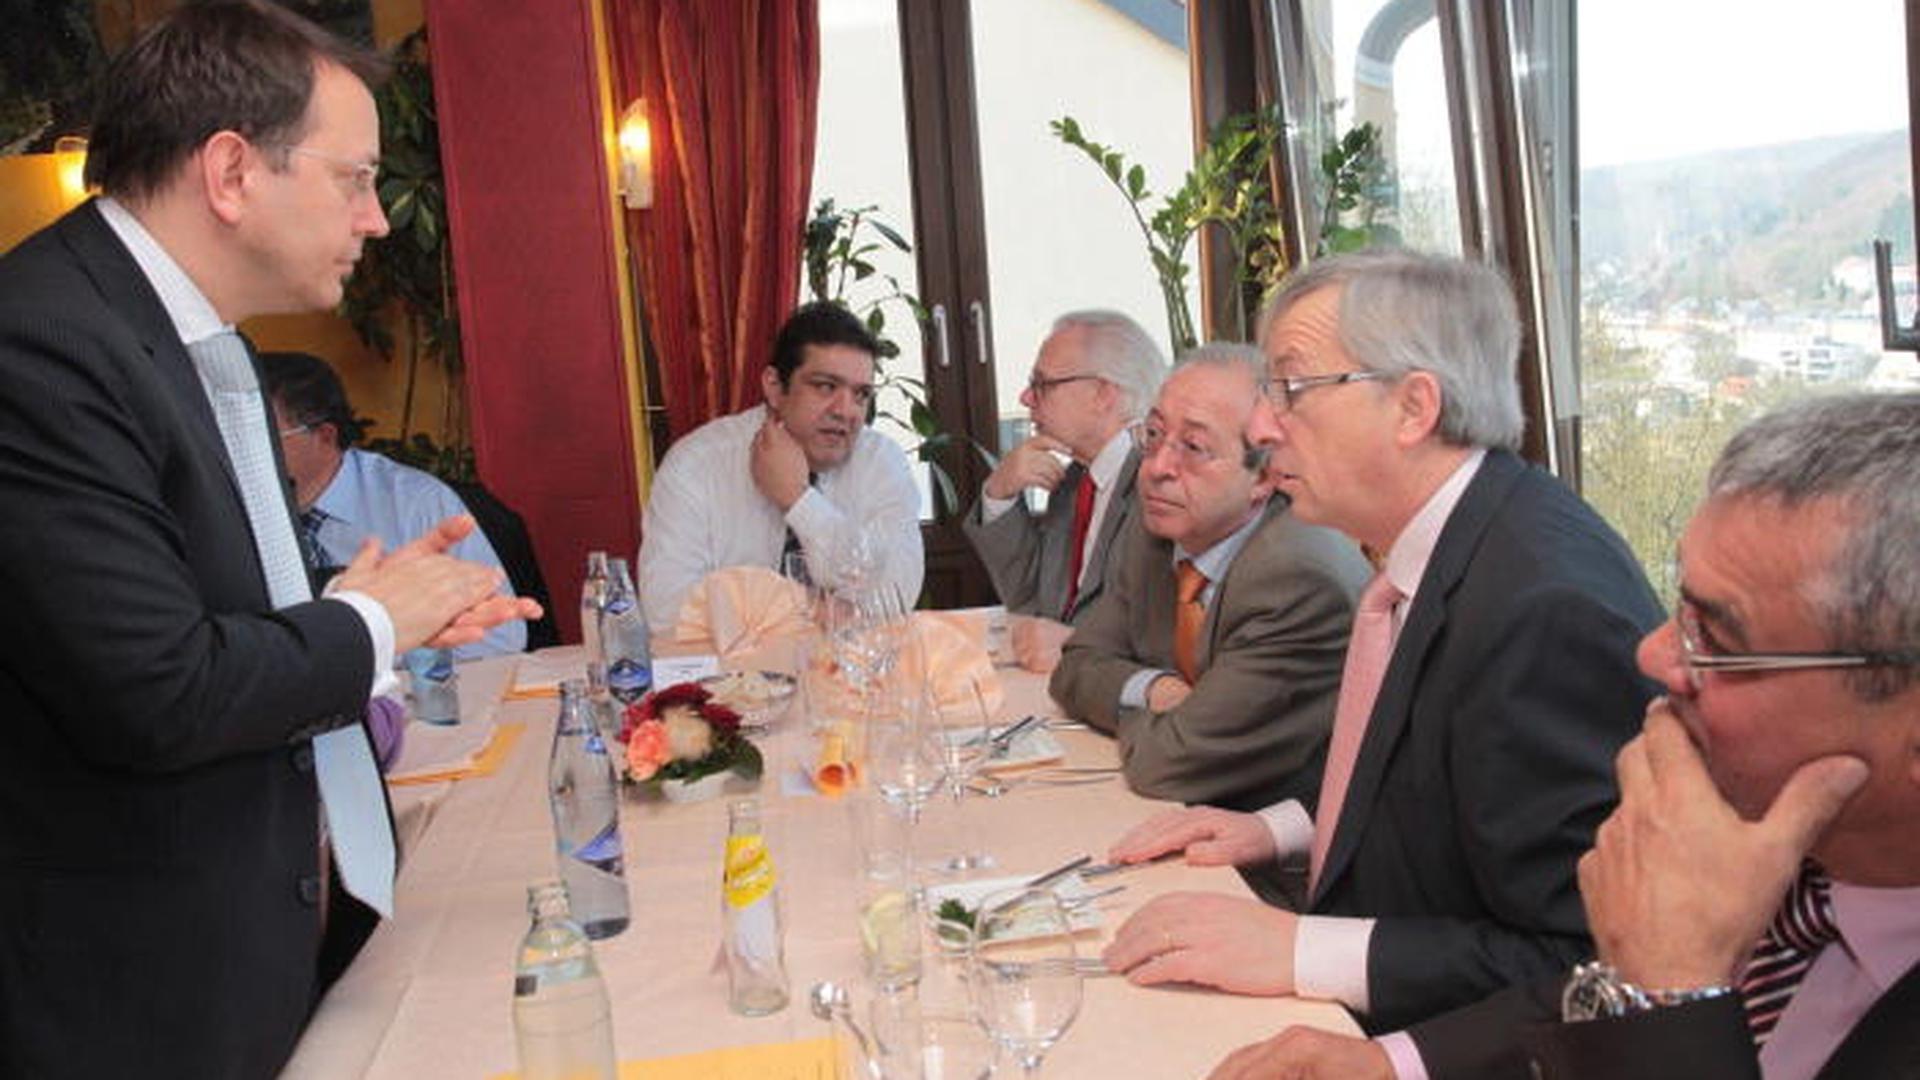 Juncker almoçou com empresários portugueses em Março de 2012, em Weimerskirsch. Hoje volta a repetir o encontro.